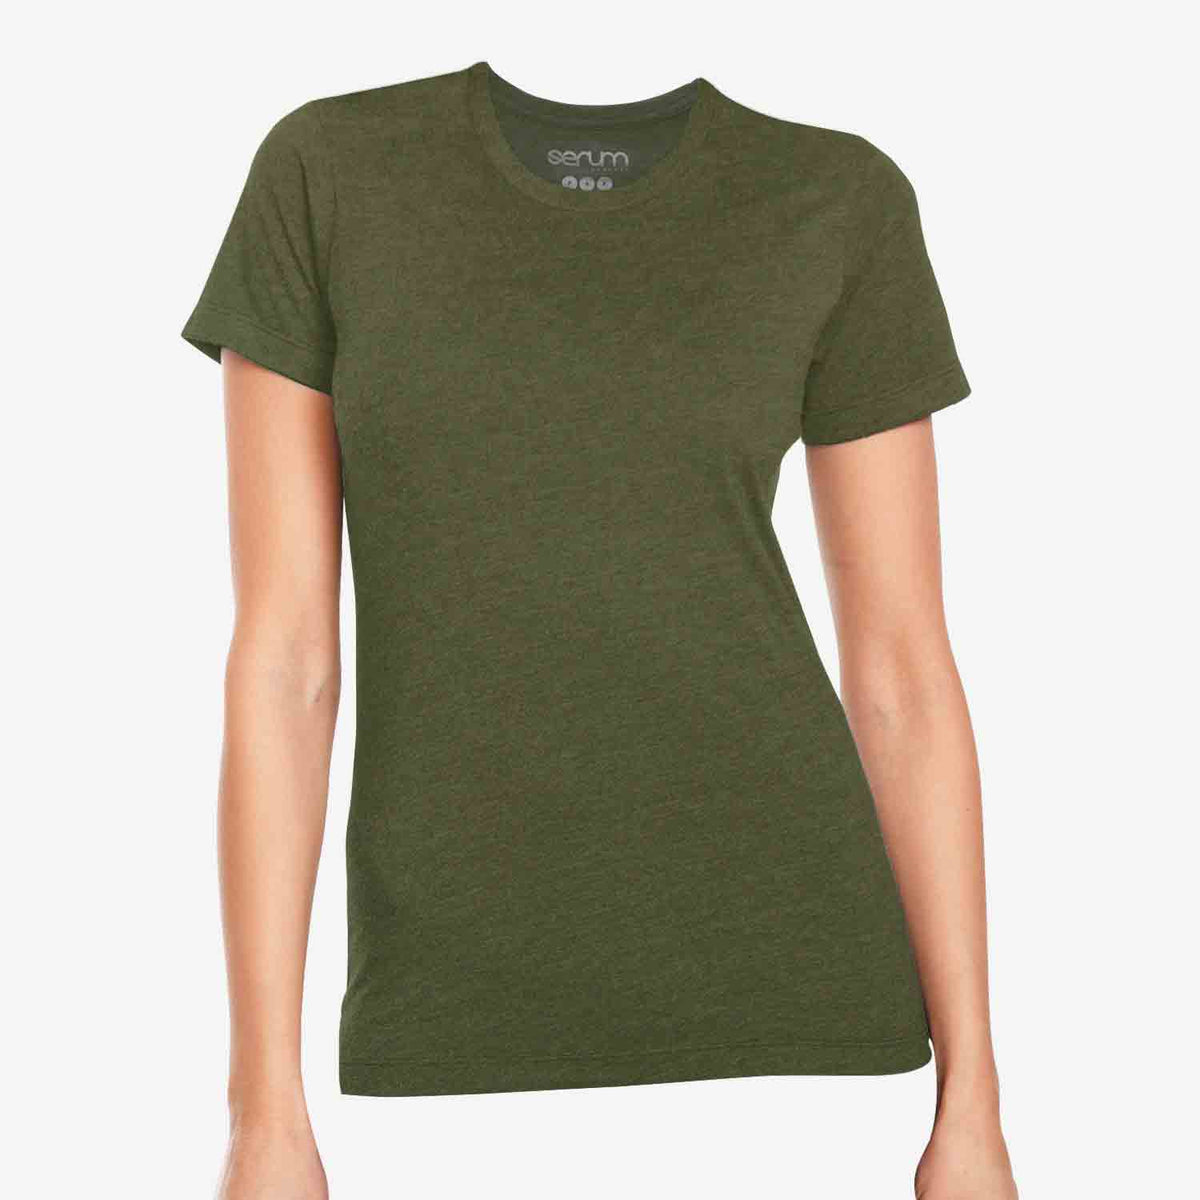 Women's Soft Tech Active Wear Tee - Dark Green – Stargazer Designs